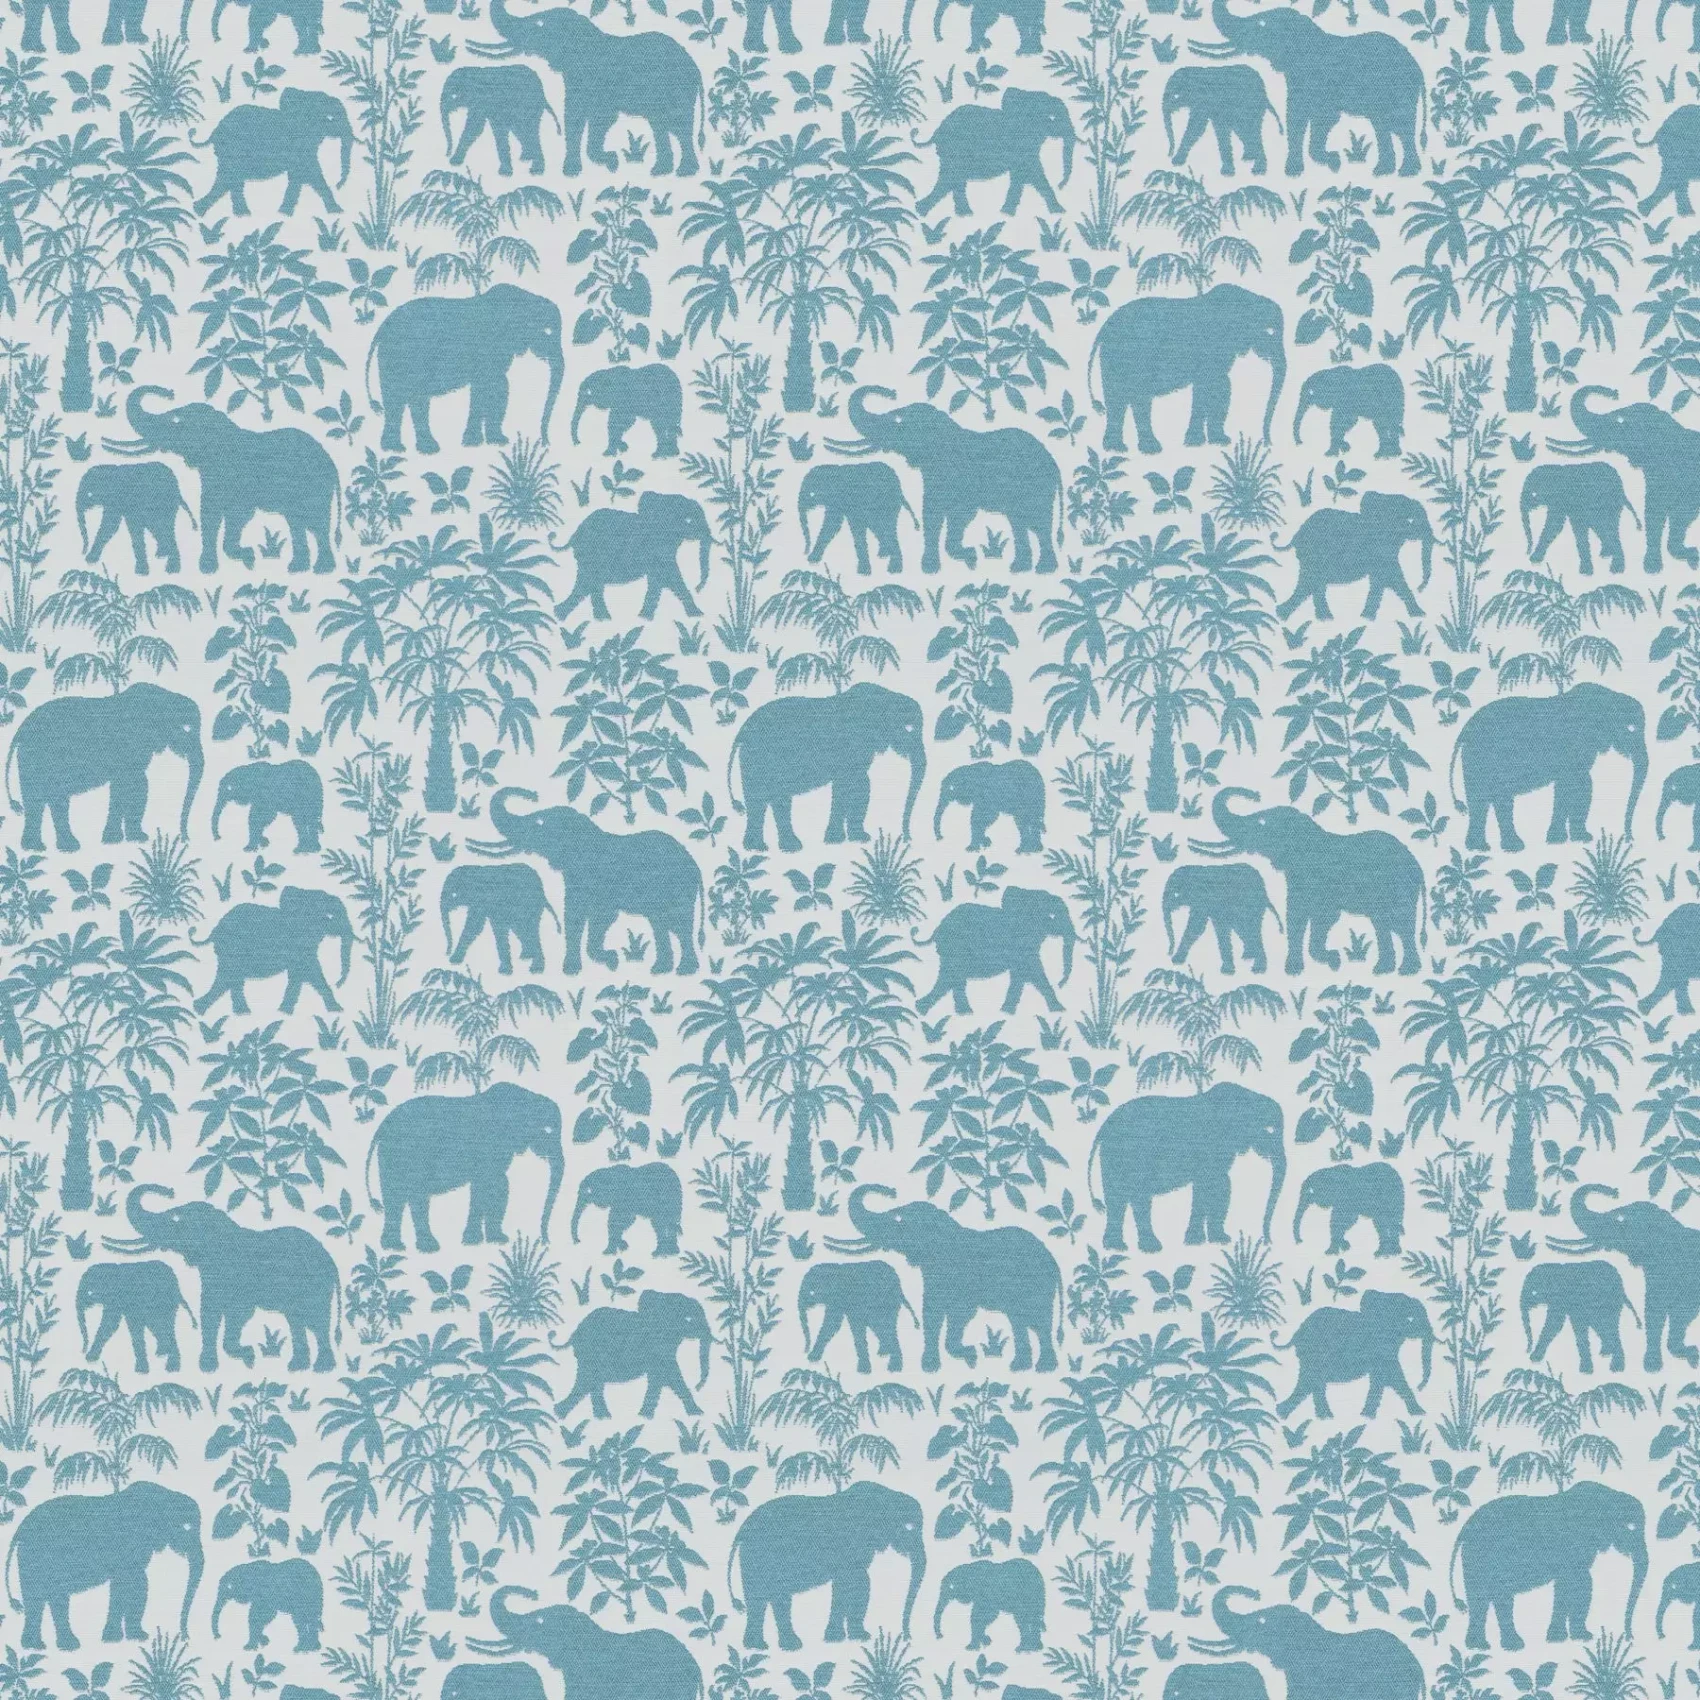 Elephants | 9-2413-080